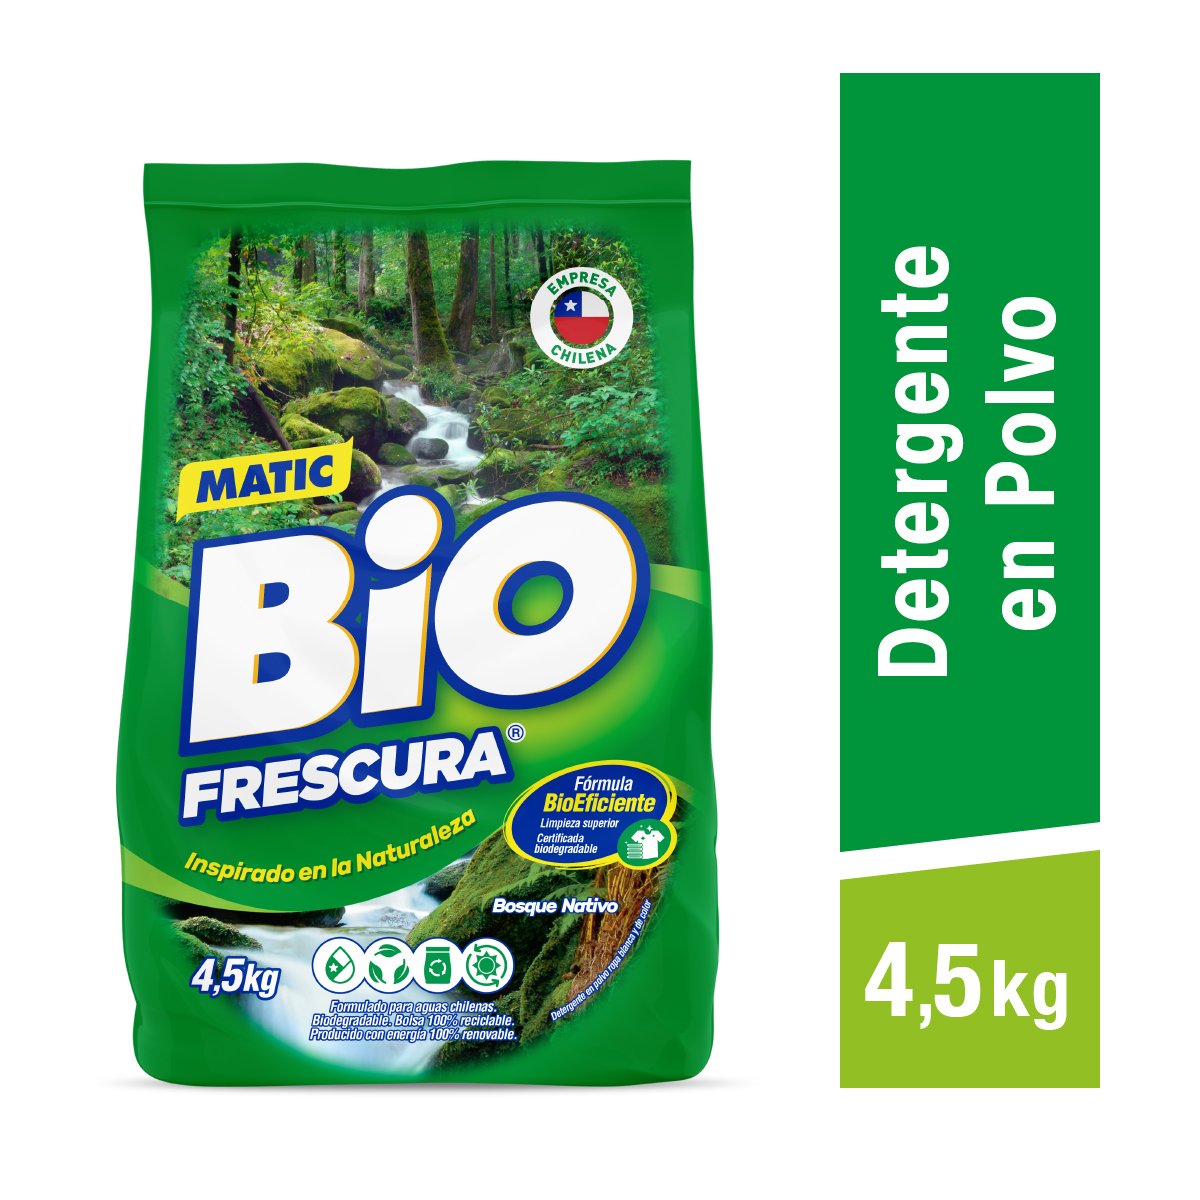 Comparar precios: Detergente En Polvo Bosque Navito - Biofrescura - ¿Cuánto Cuesta? ¿Dónde Comprar?